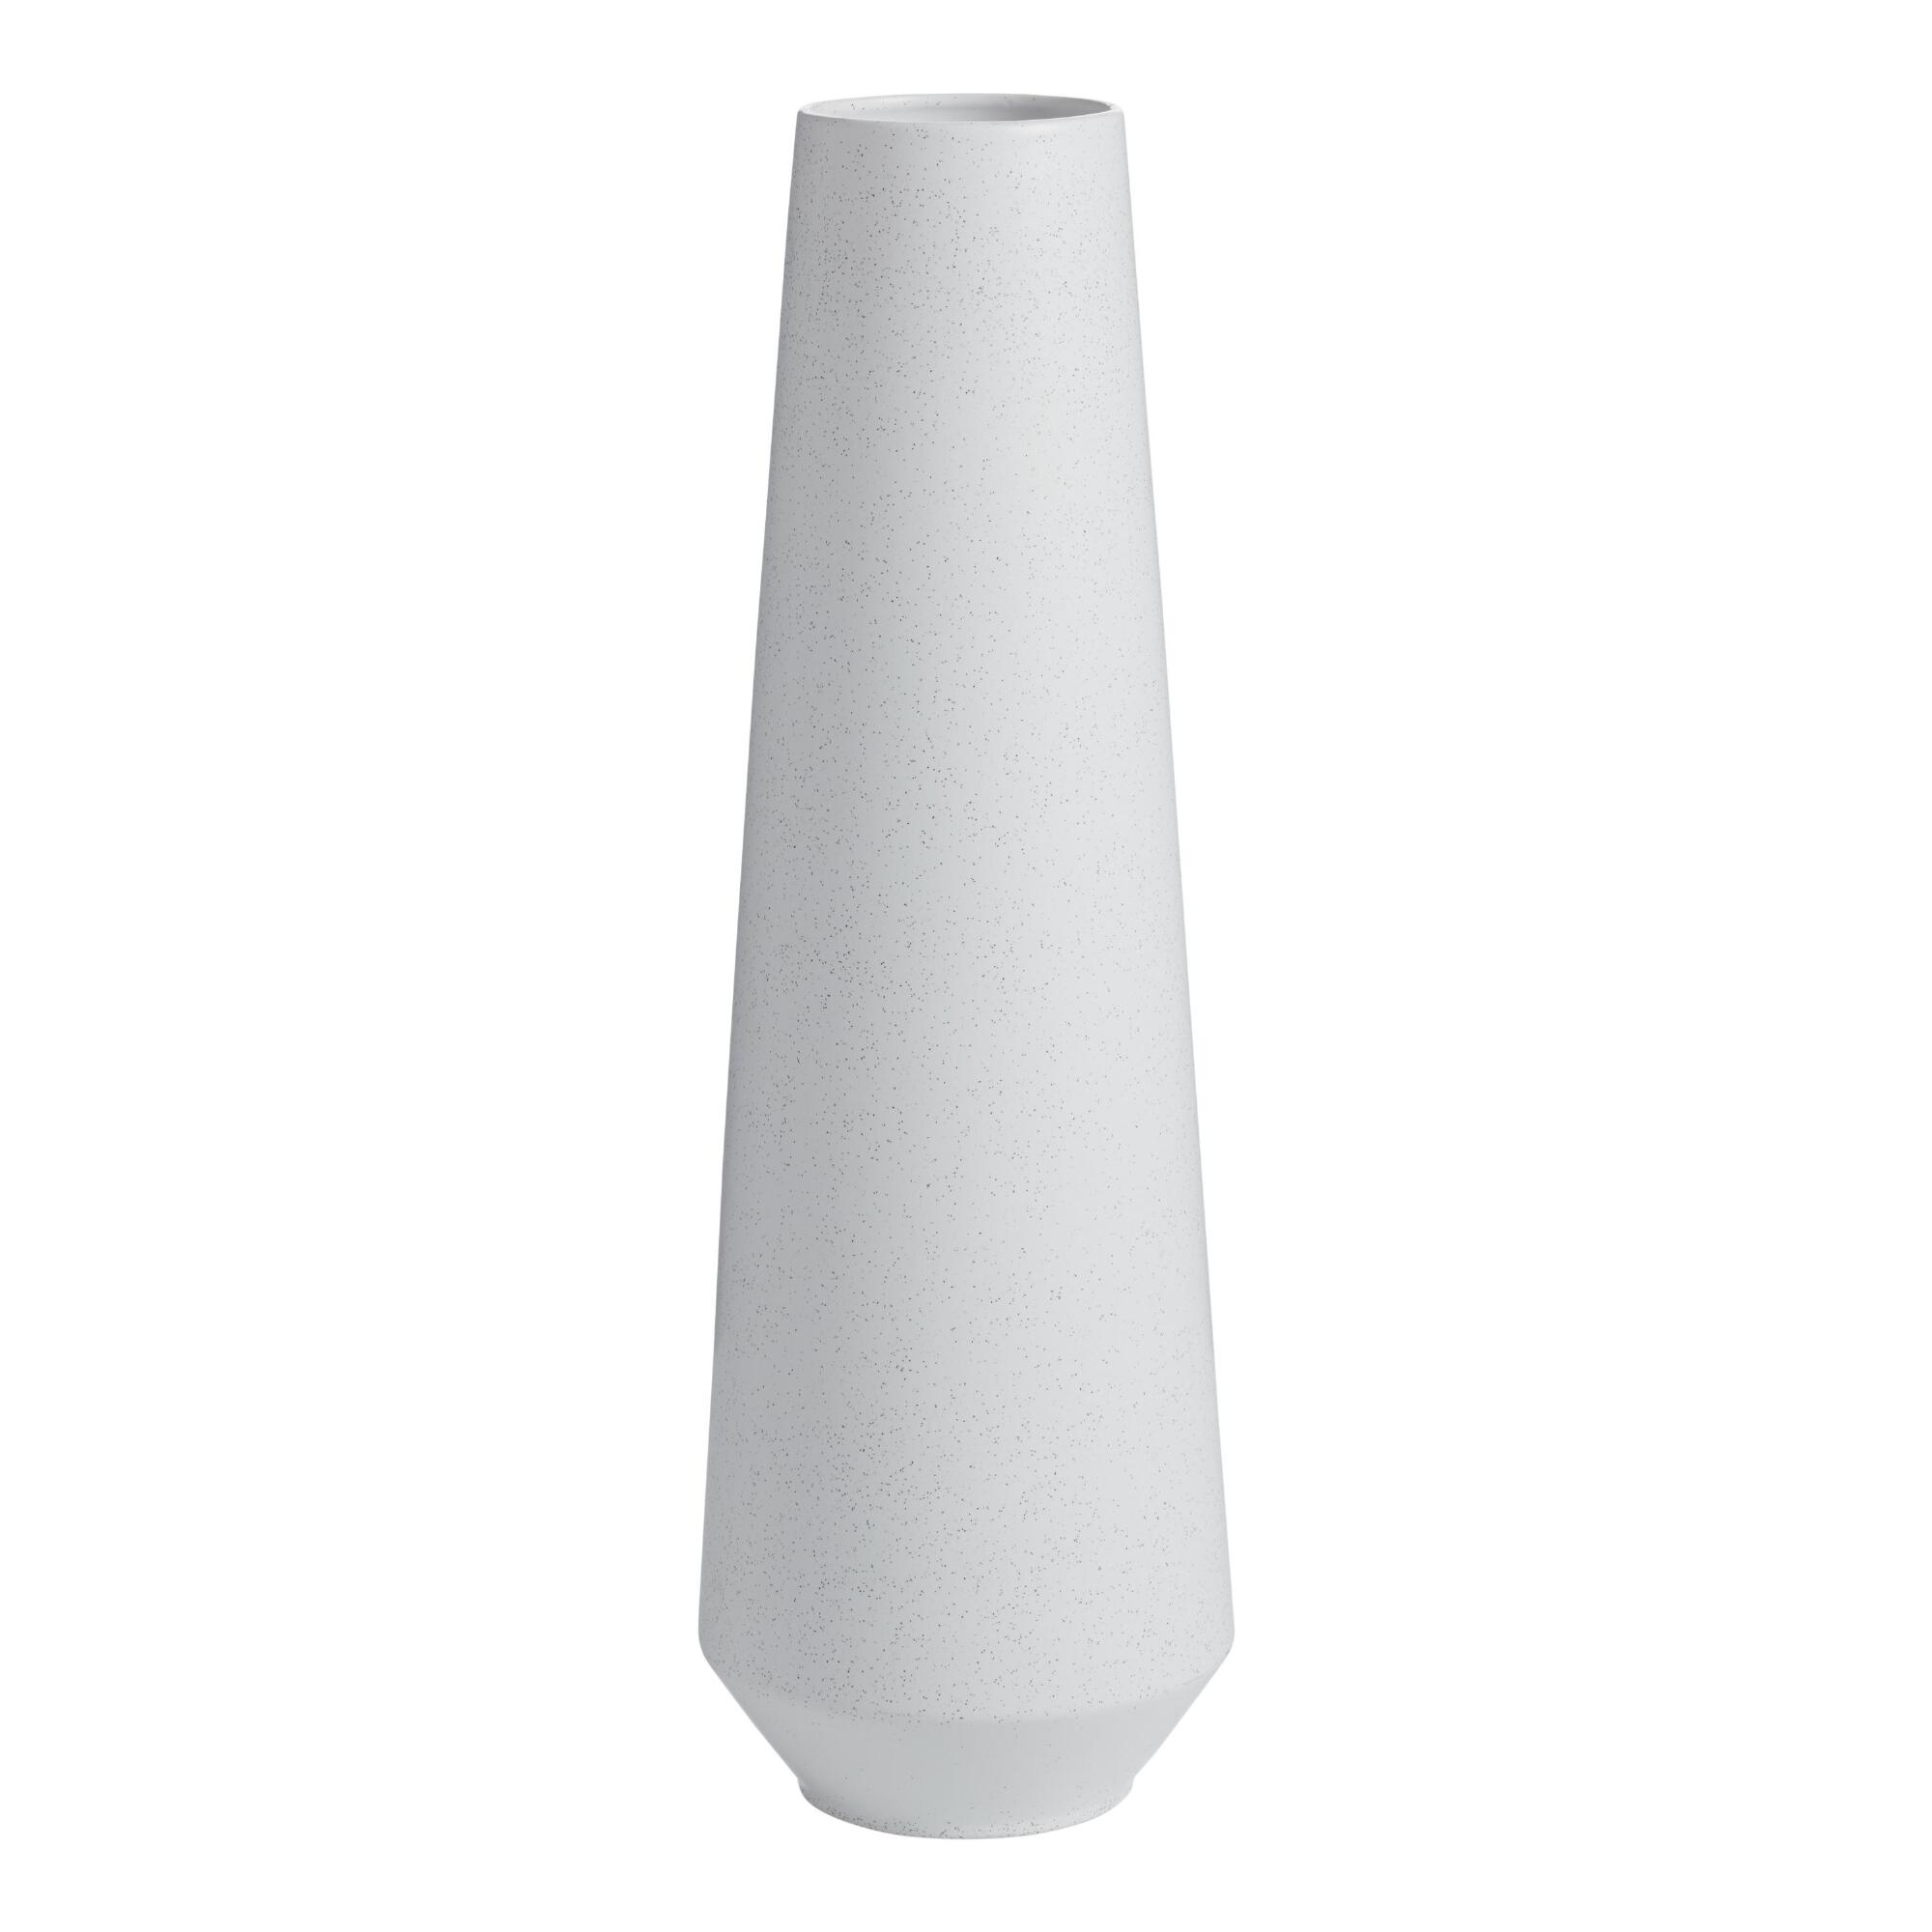 Tall White Speckled Ceramic Vase by World Market